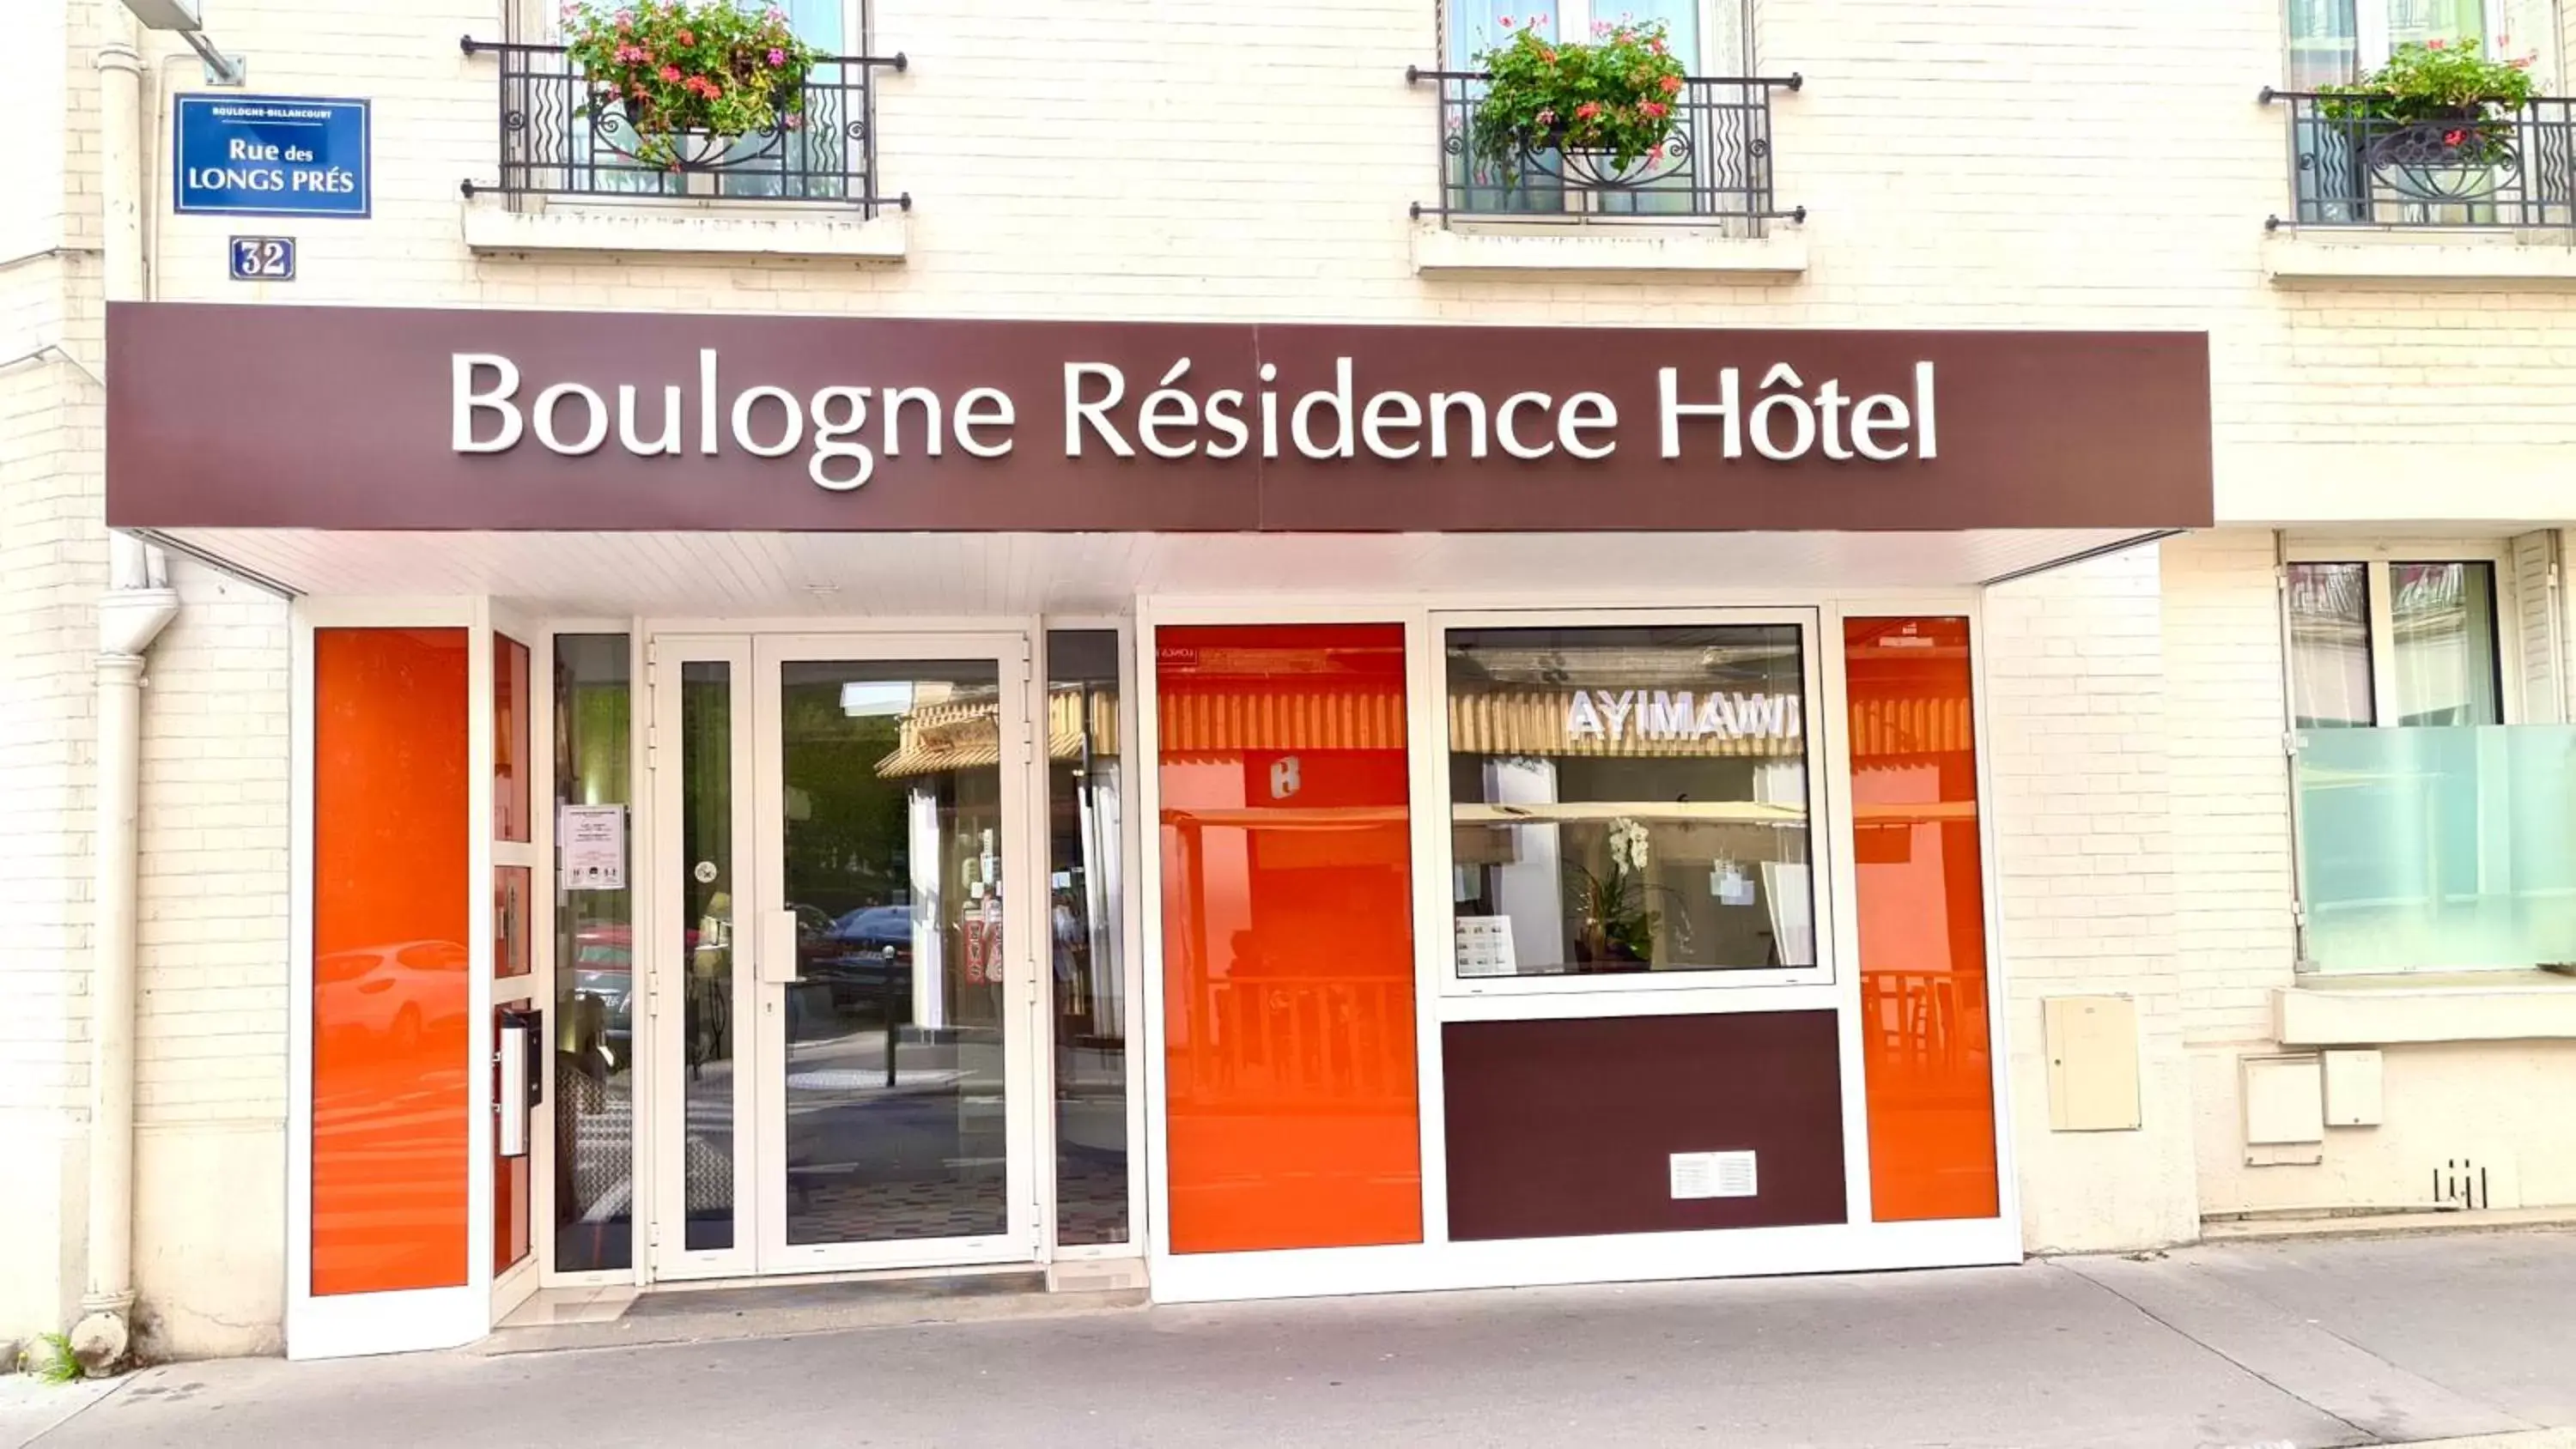 Facade/entrance in Boulogne Résidence Hotel